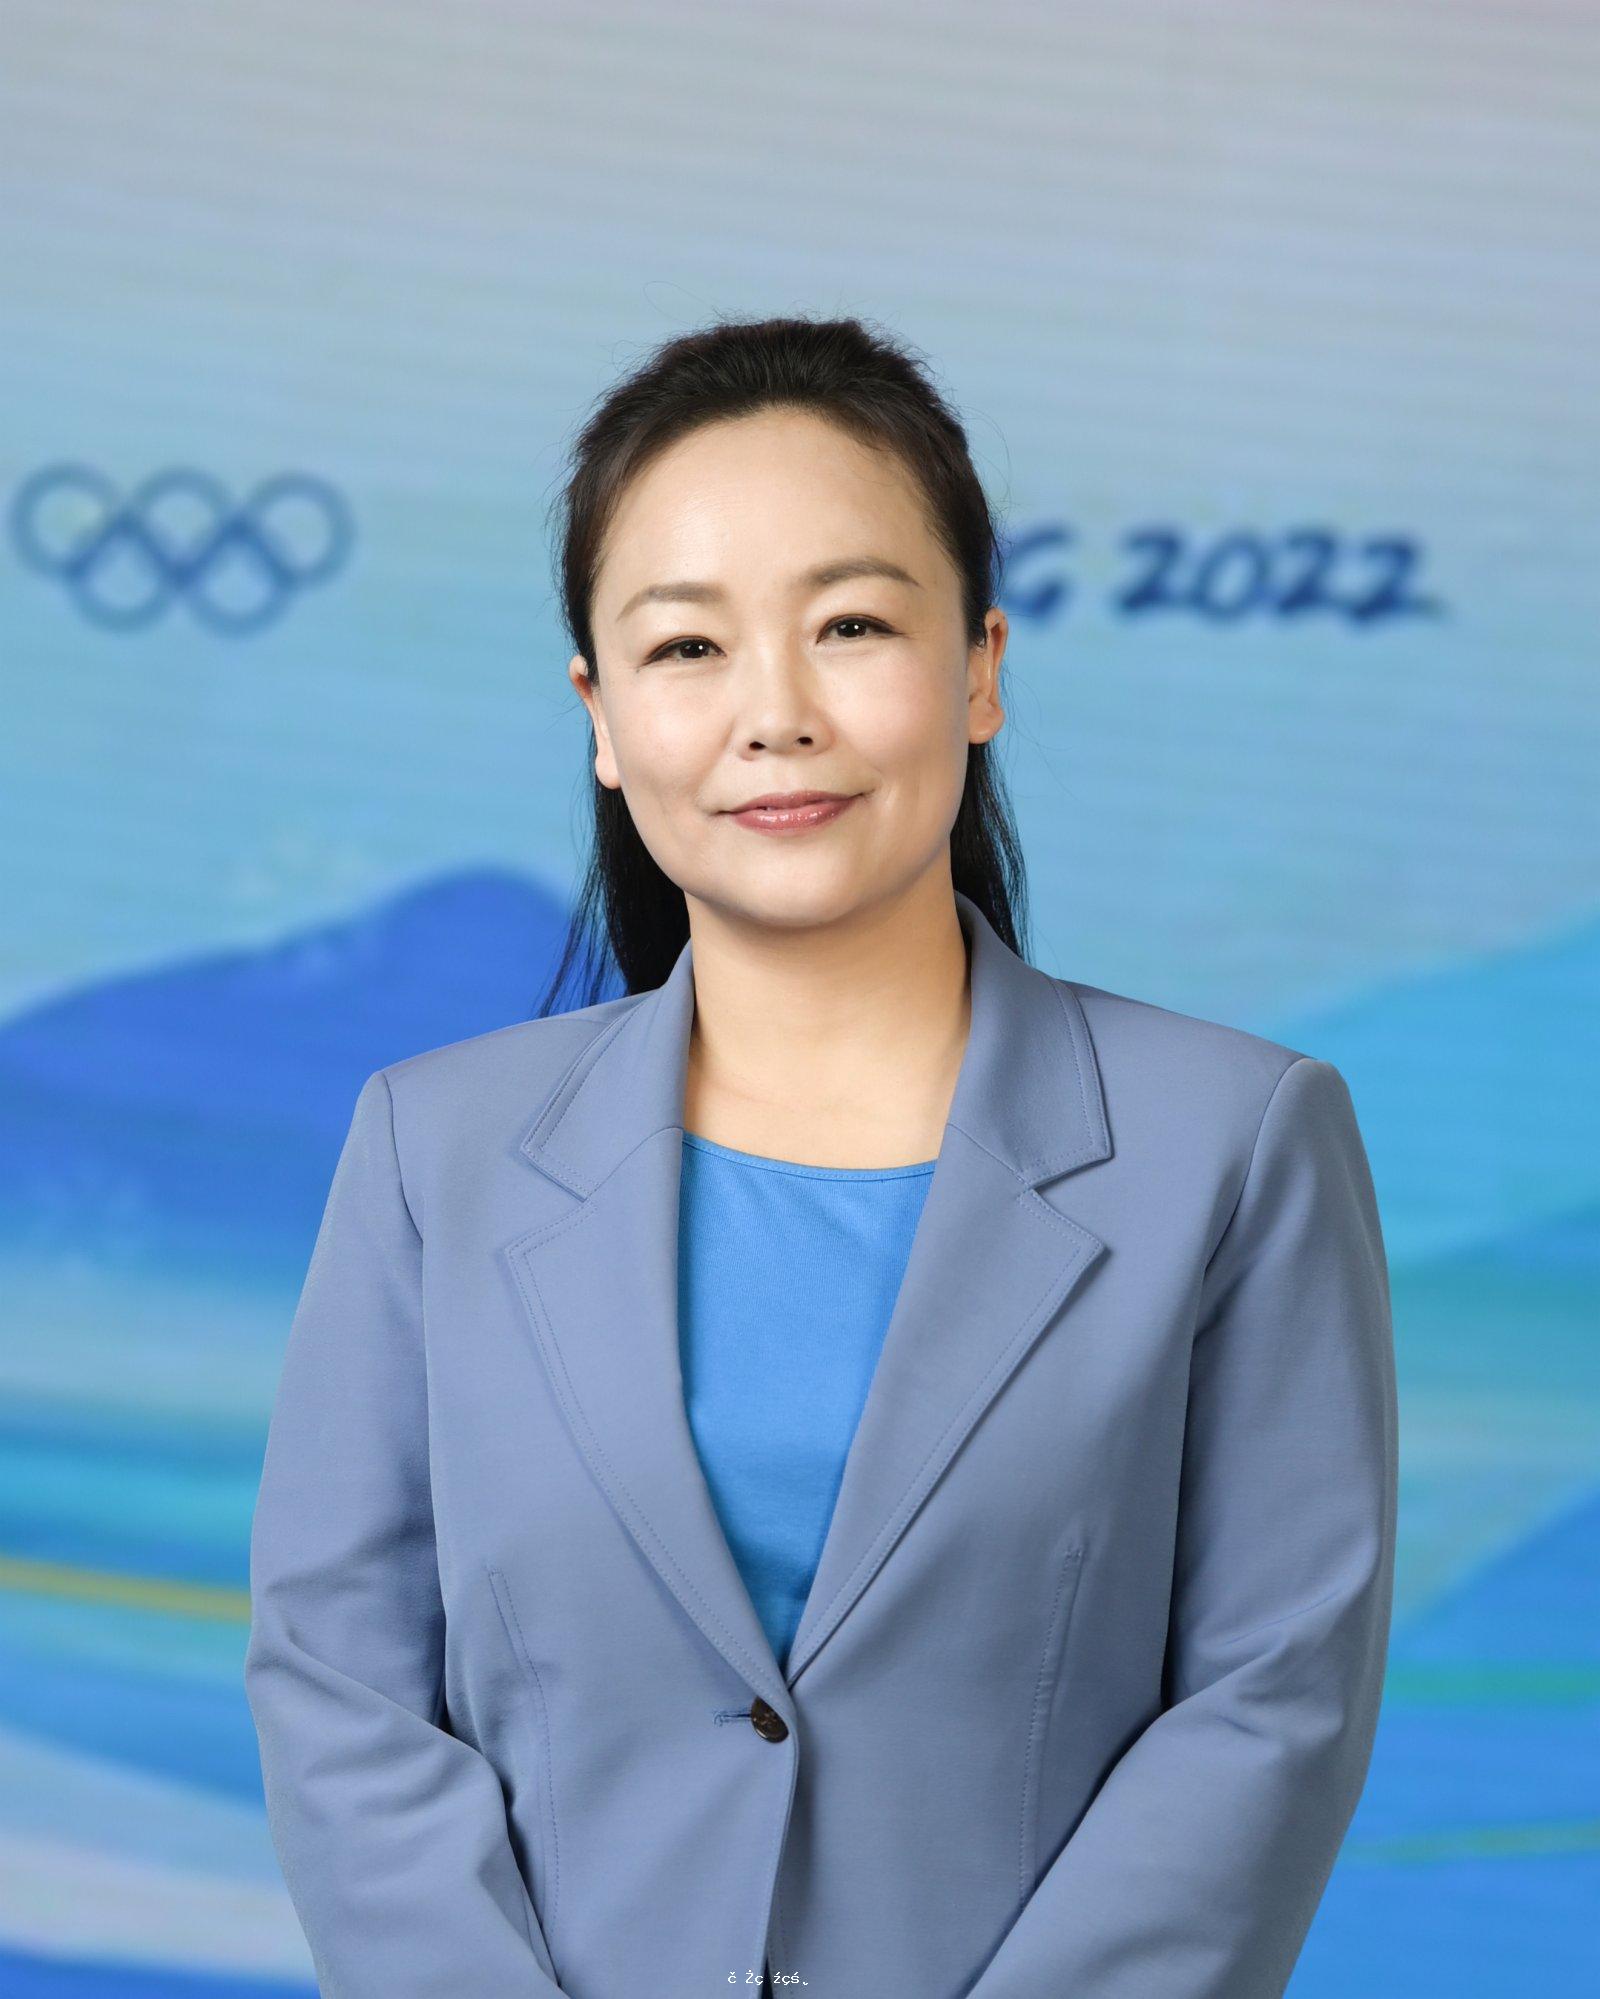 北京冬奧組委兩位新聞發言人正式亮相